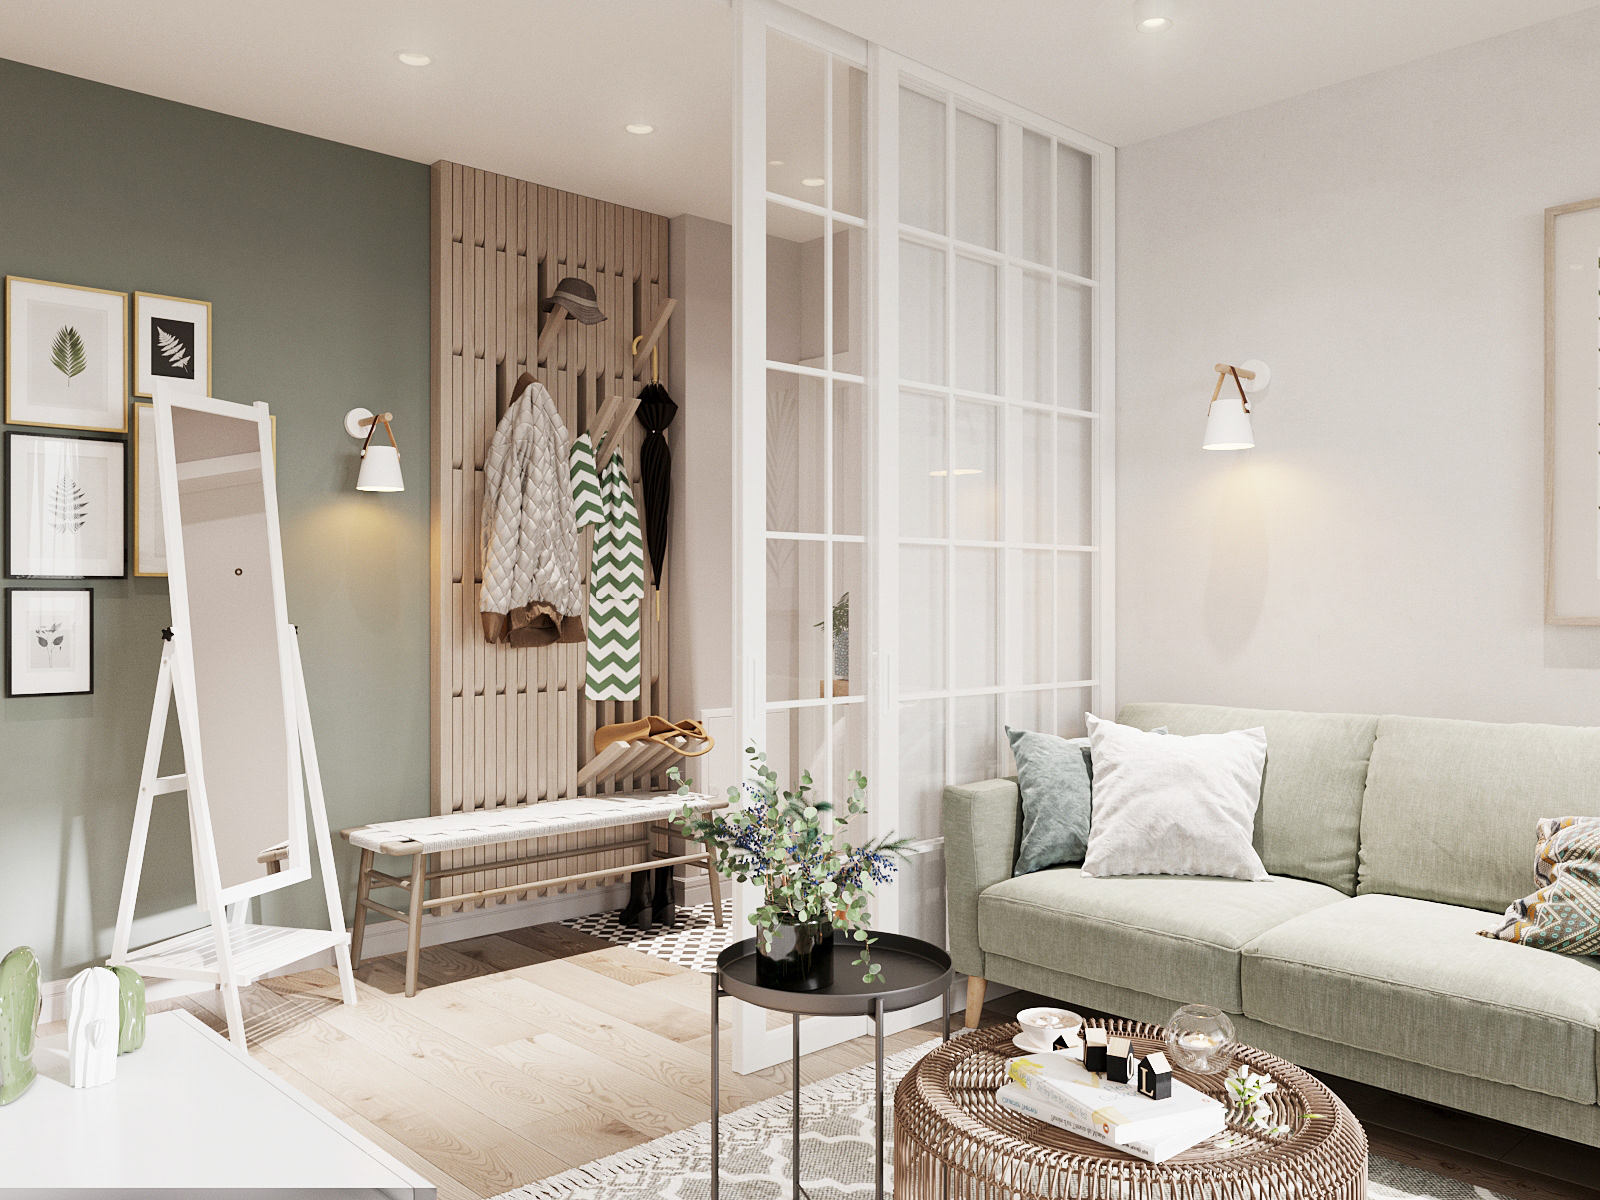 IconP - Thiết kế chung cư căn hộ phong cách Scandinavian, phong cách Bắc Âu Ấn tượng, gam màu xanh mát mẻ, êm dịu, dễ chịu